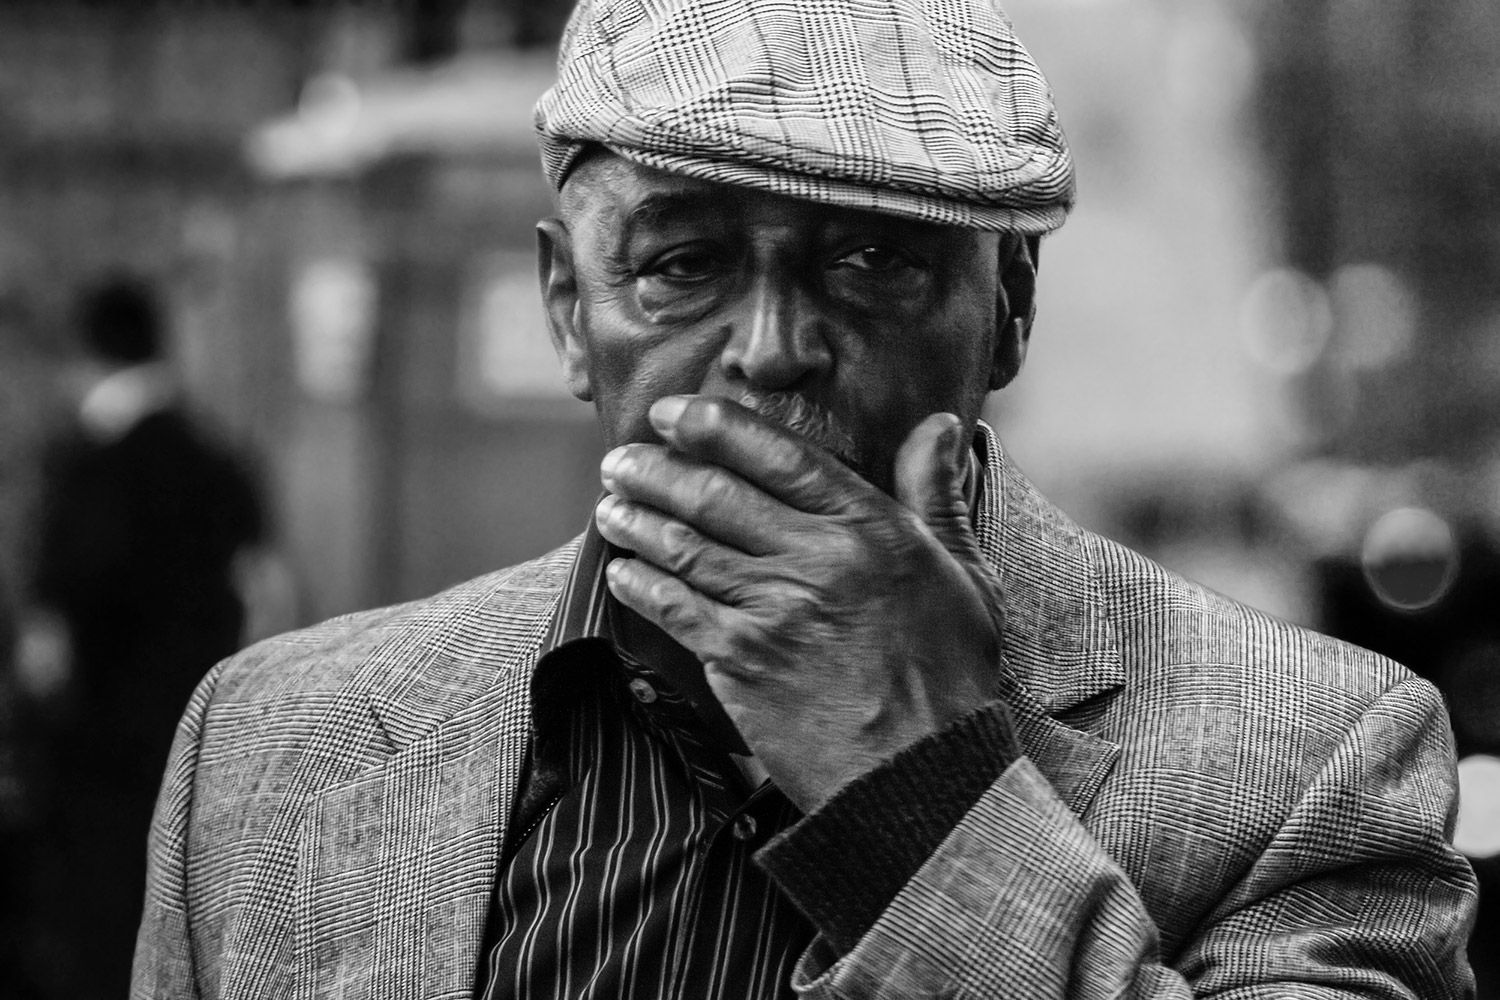 Ein Mann in den Straßen von New York. Foto: Simon Hollay. Vorlesung »Digitale Fotografie« an der DHBW Heilbronn.